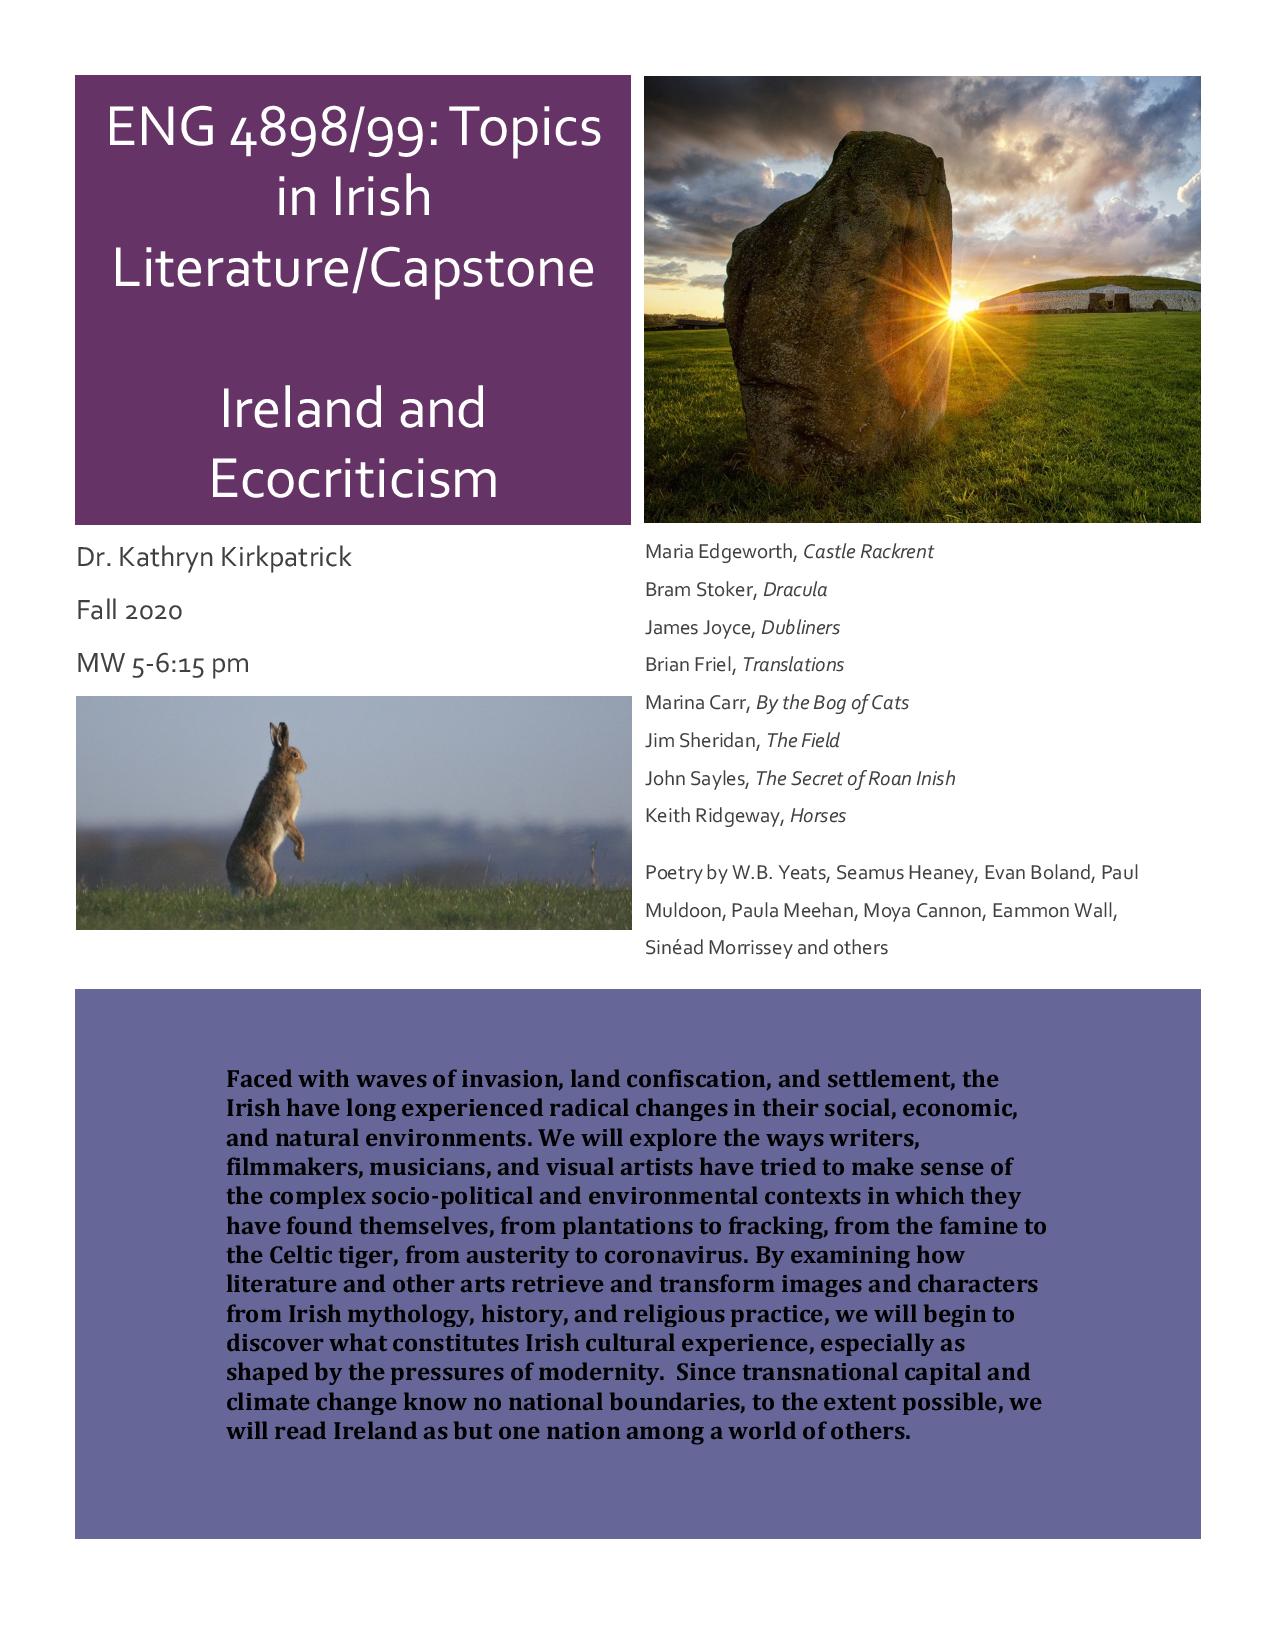 research topics for irish literature